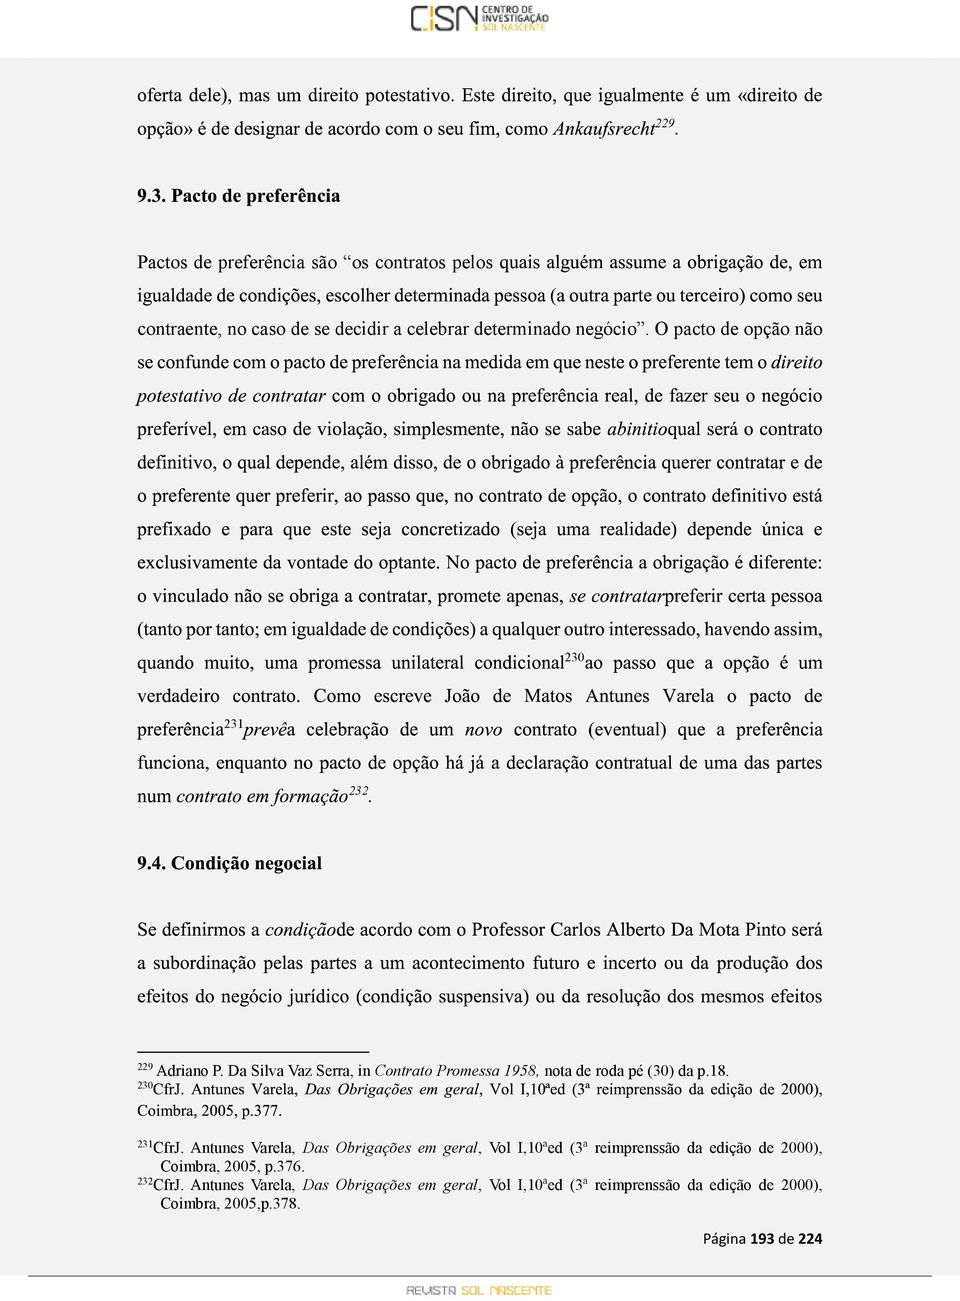 230 231 CfrJ. Antunes Varela, Das Obrigações em geral, Vol I,10ªed (3ª reimprenssão da edição de 2000), Coimbra, 2005, p.376.